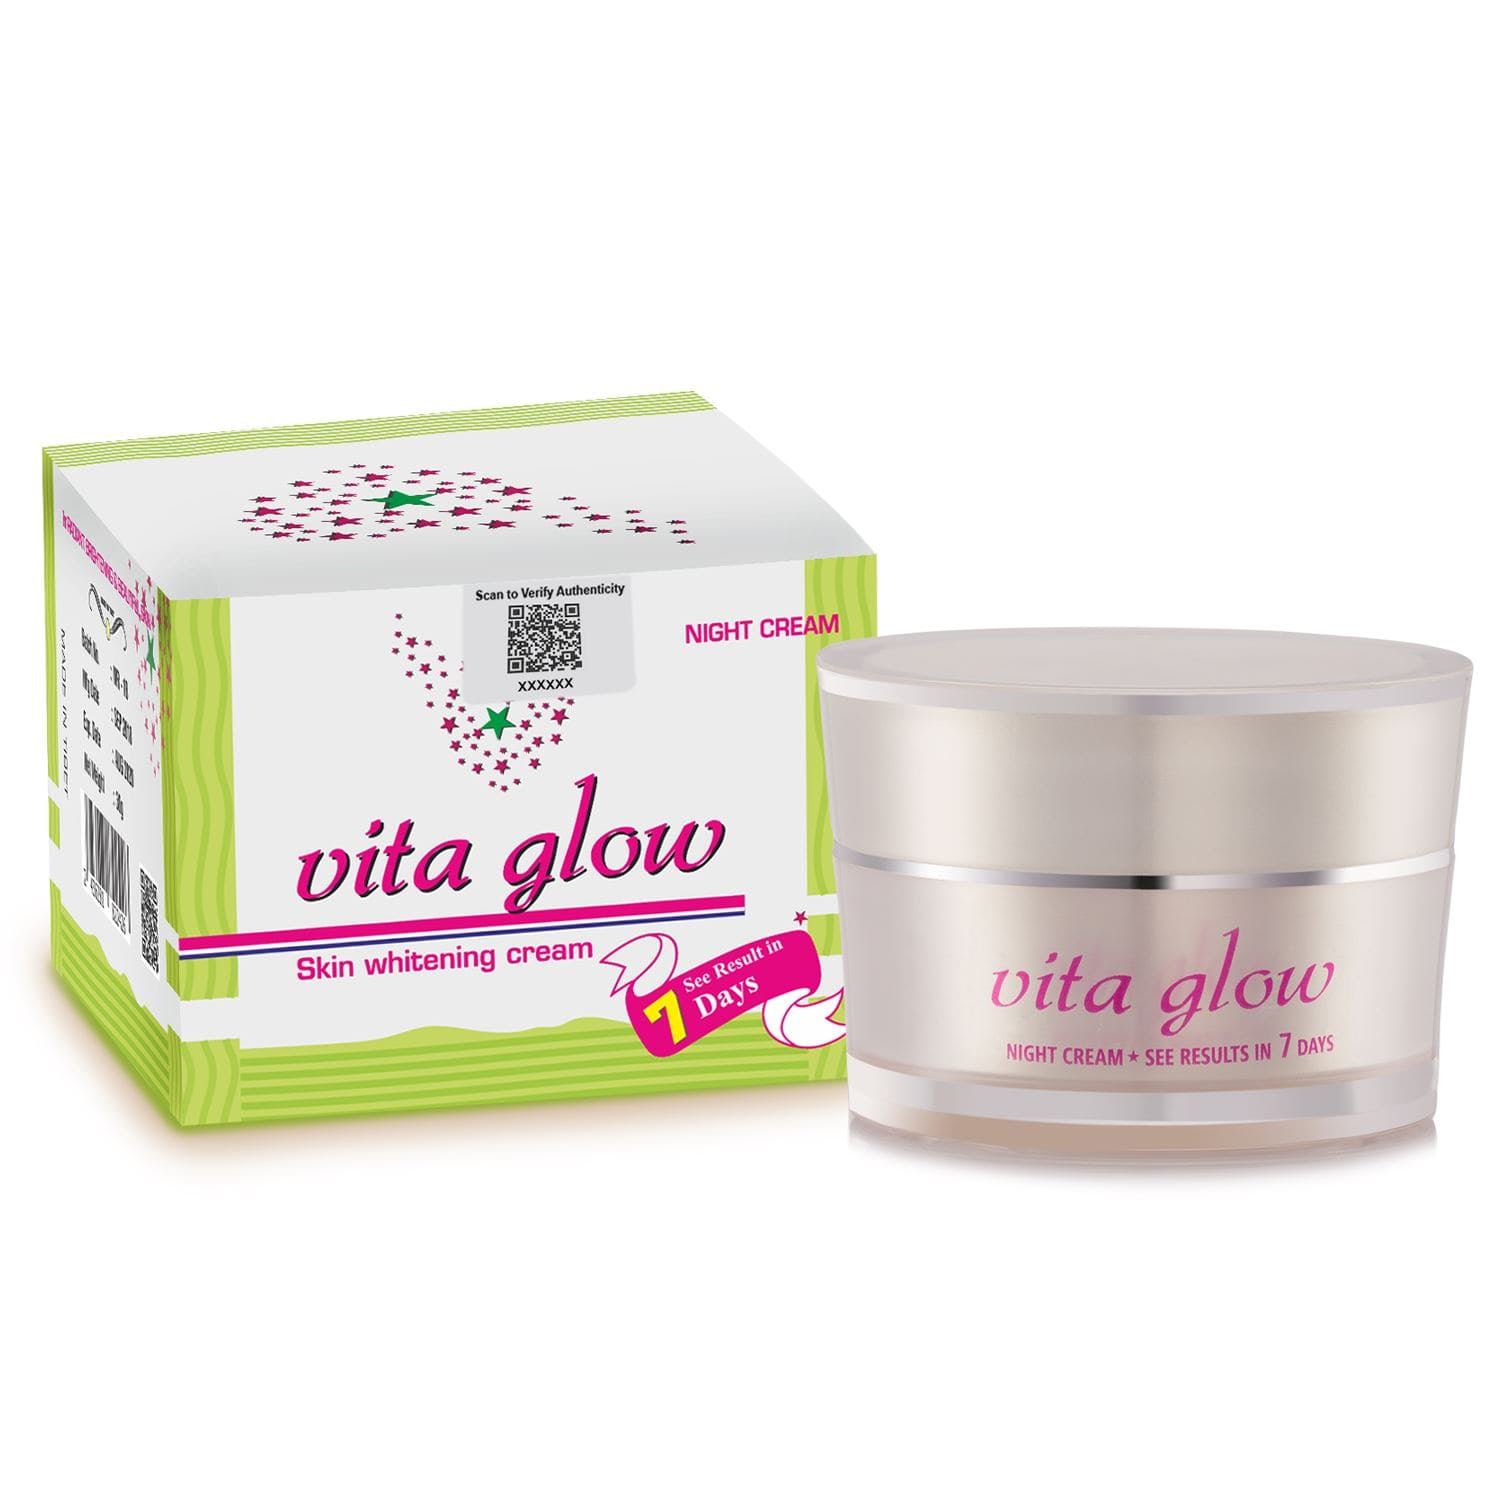 Vita Glow Night Cream For Skin Whitening AUTHENTIC (30g) reviews